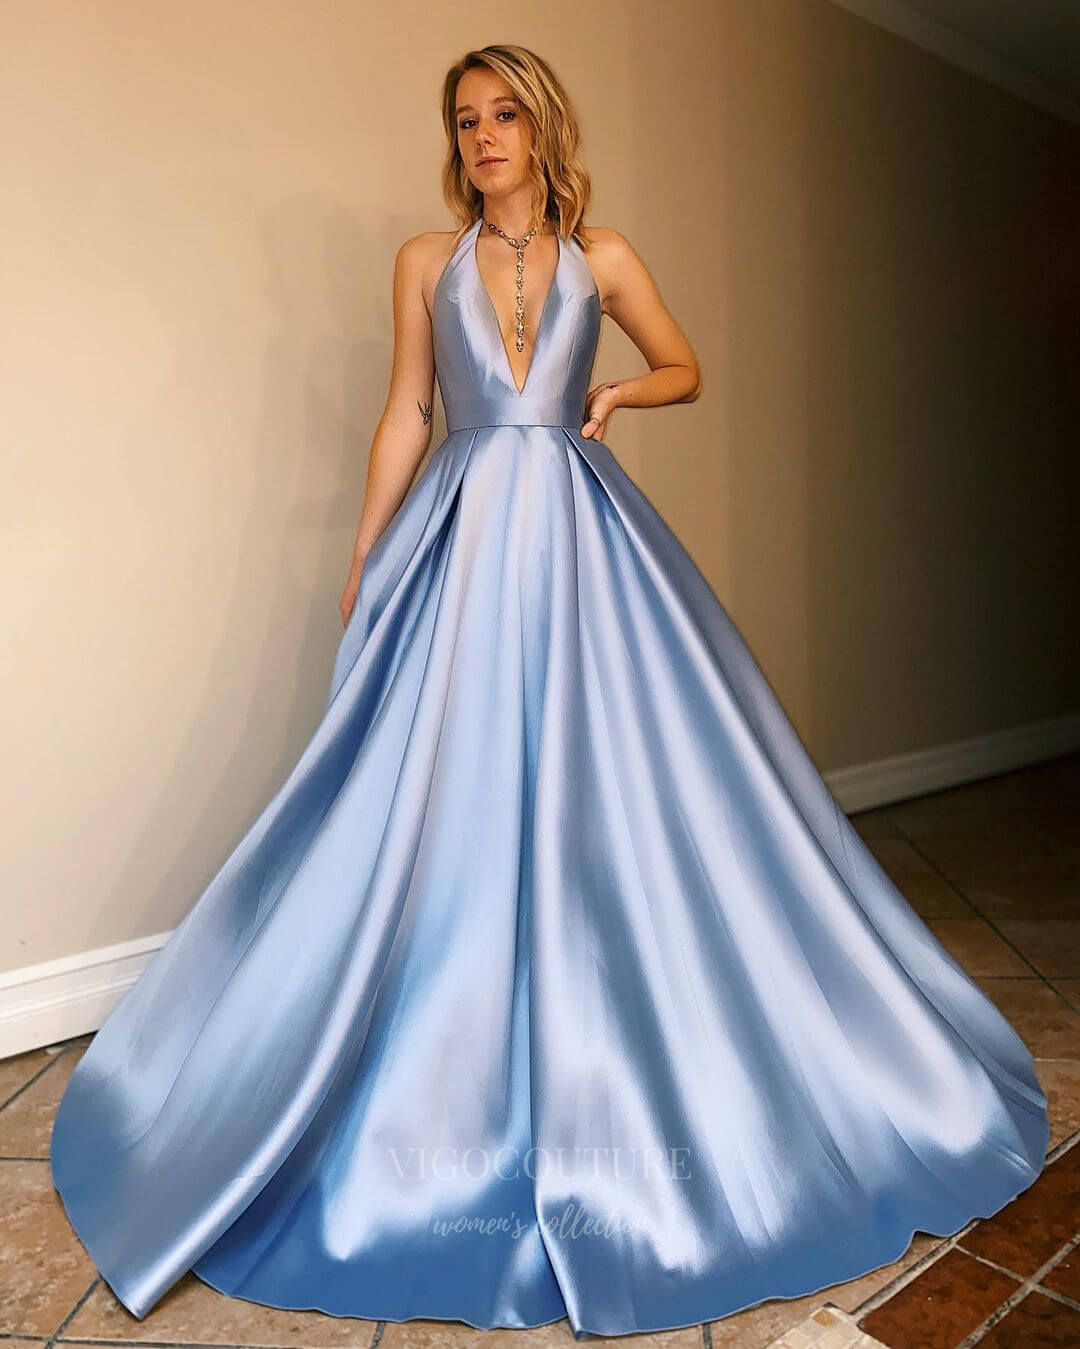 vigocouture-Satin Halter Neck A-Line Prom Dress 20837-Prom Dresses-vigocouture-Light Blue-US2-